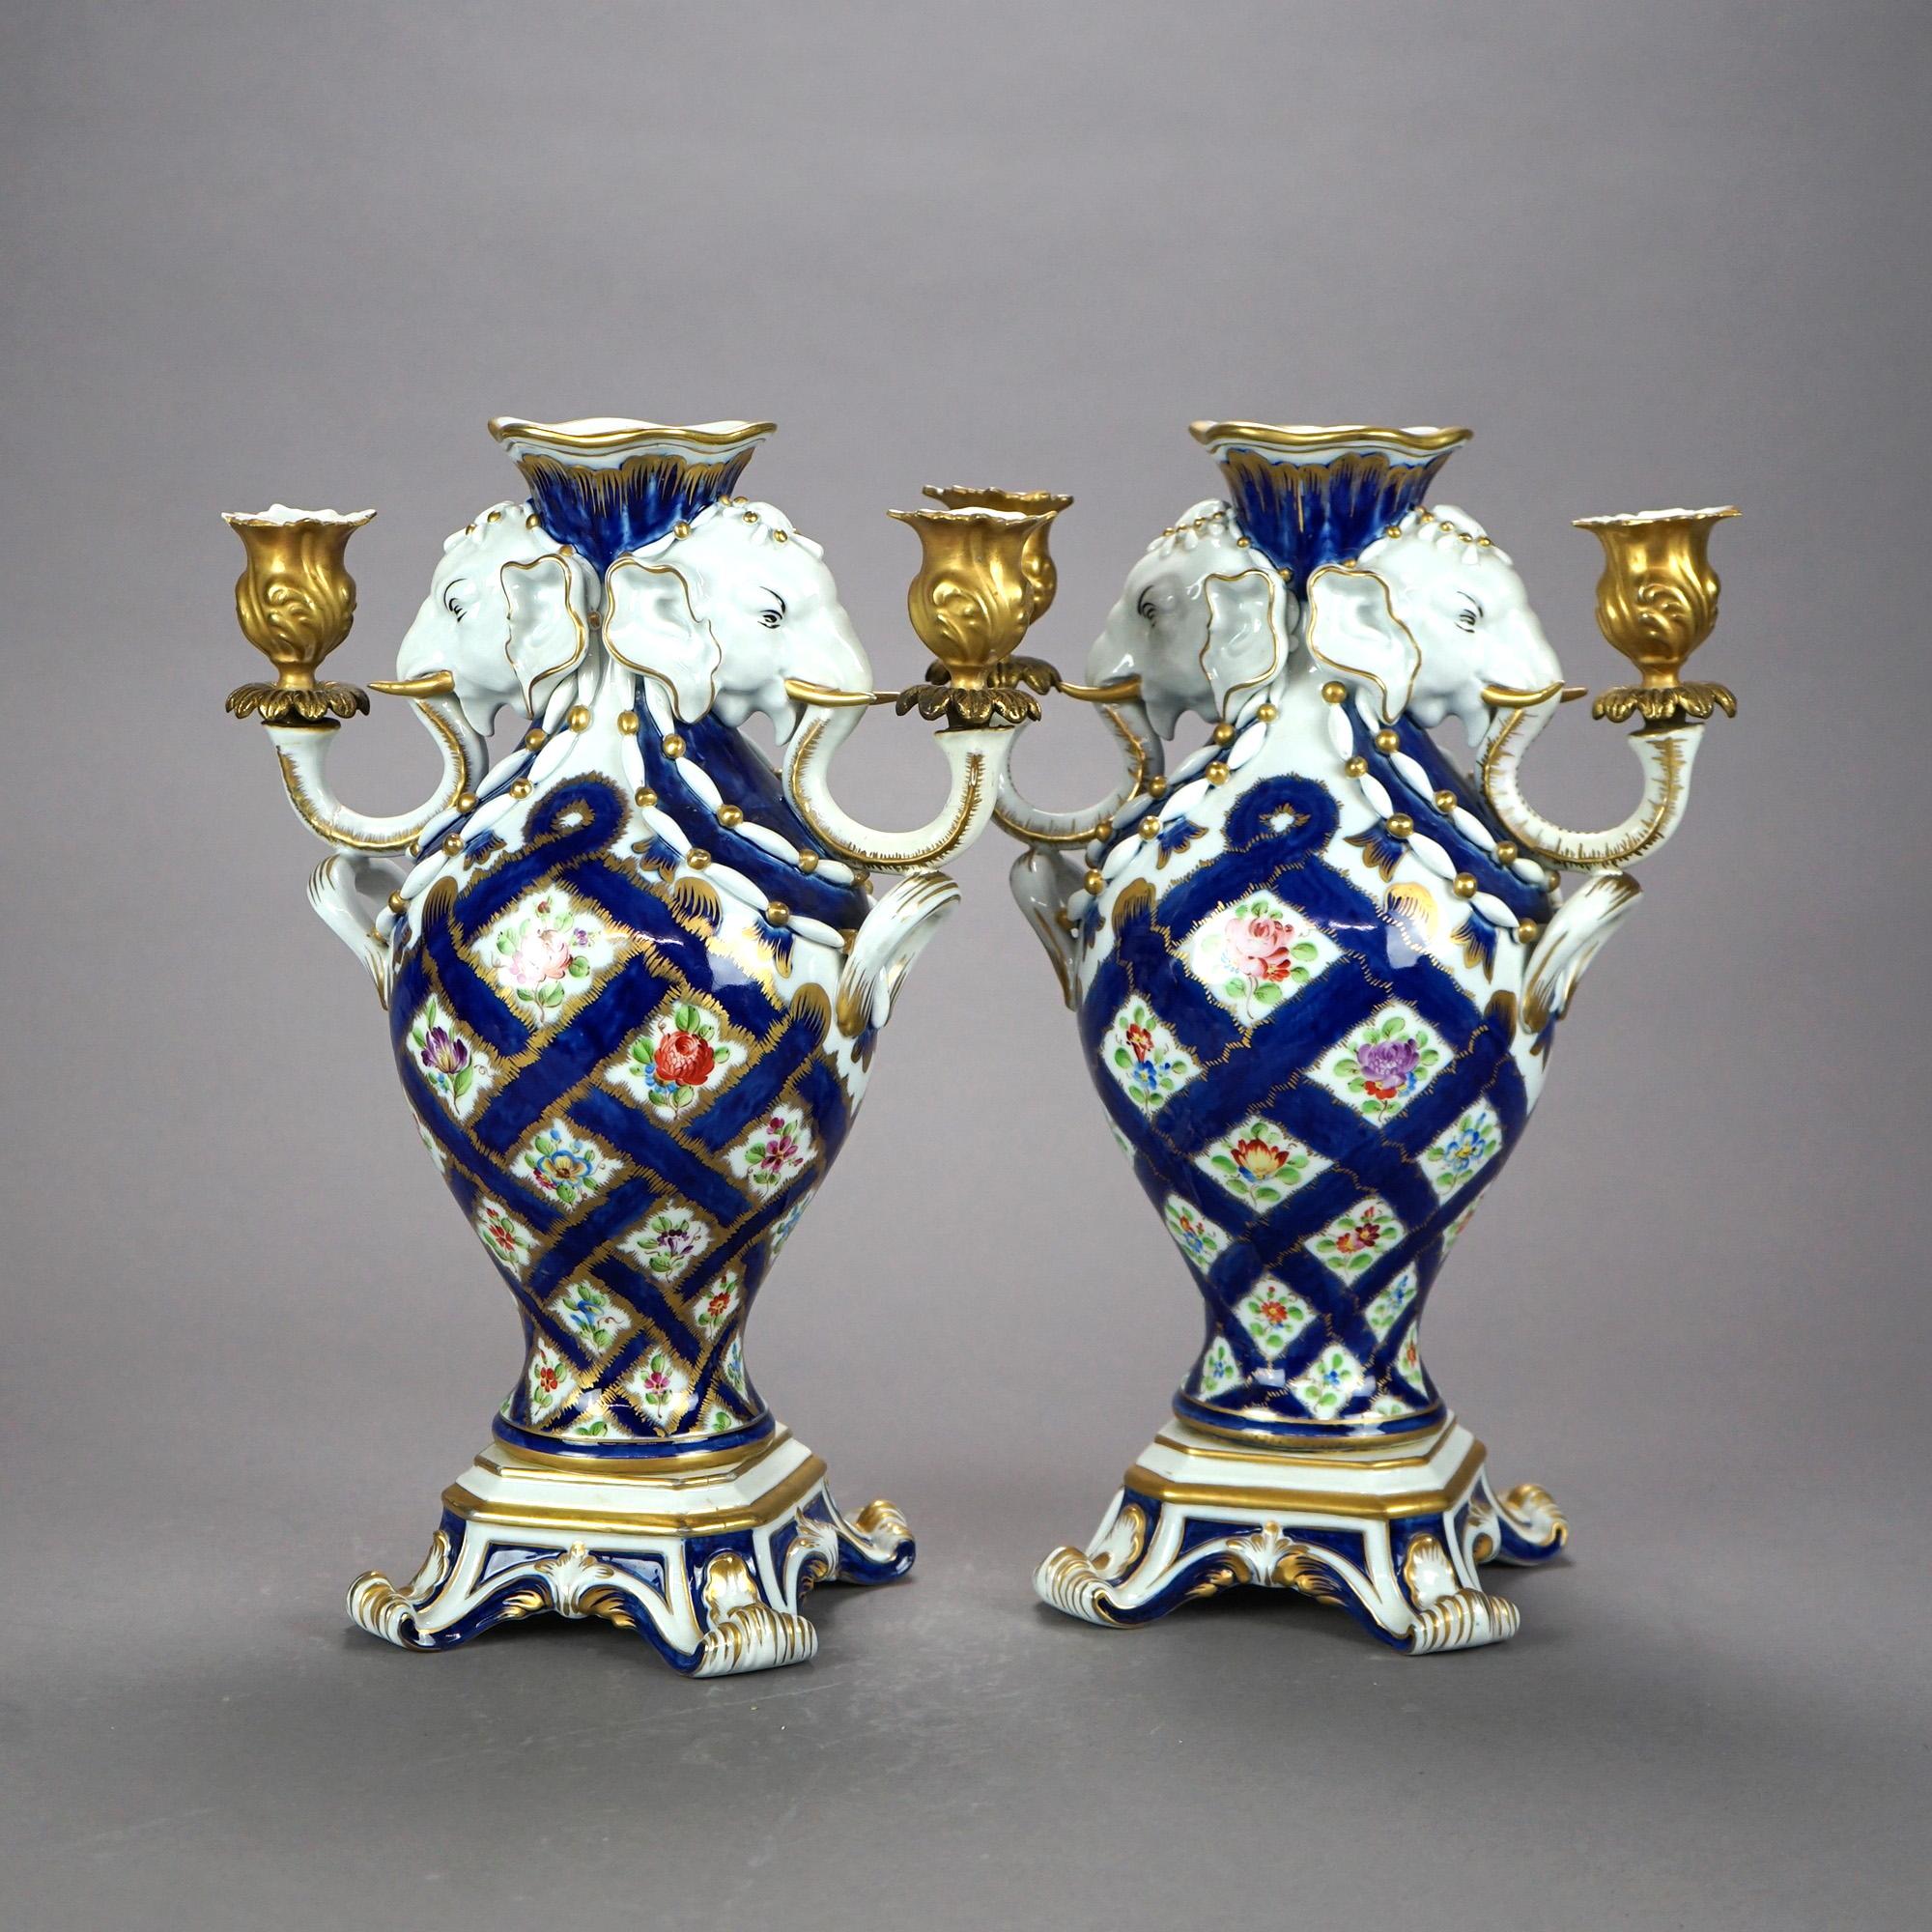 Gilt Italian Figural Porcelain Candelabra Urns with Elephants for Bonwit Teller 20thC For Sale